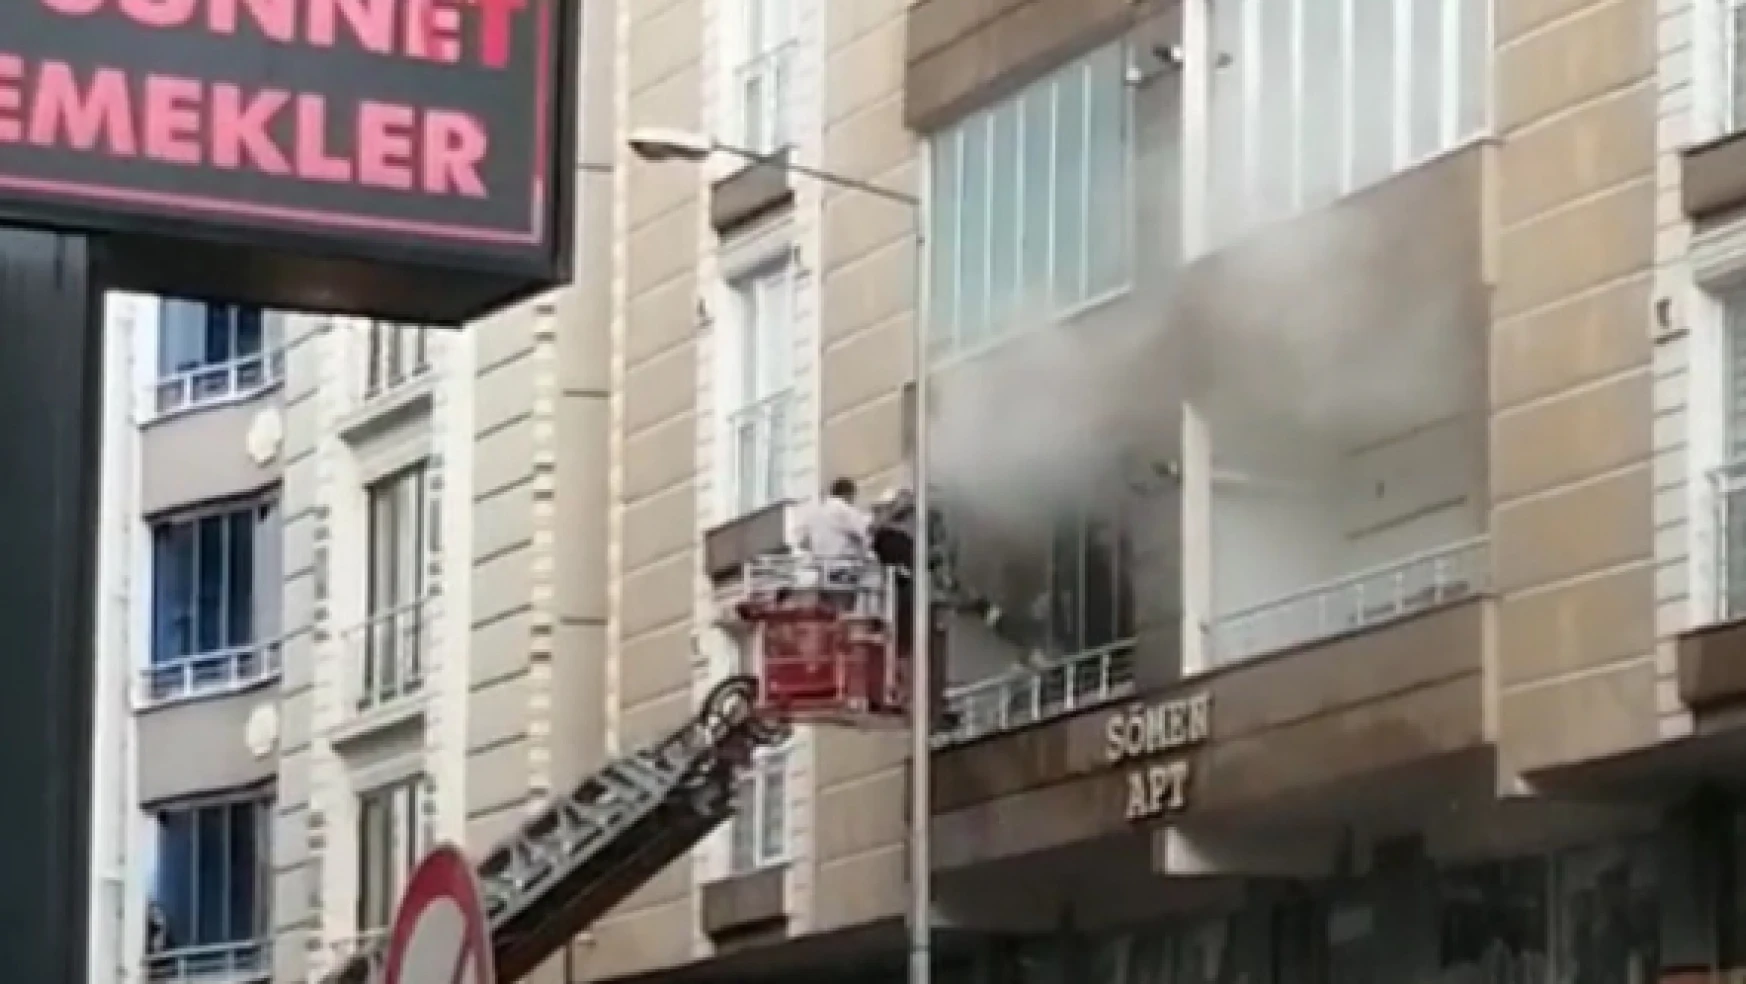 3 katlı apartmanda yangın çıktı